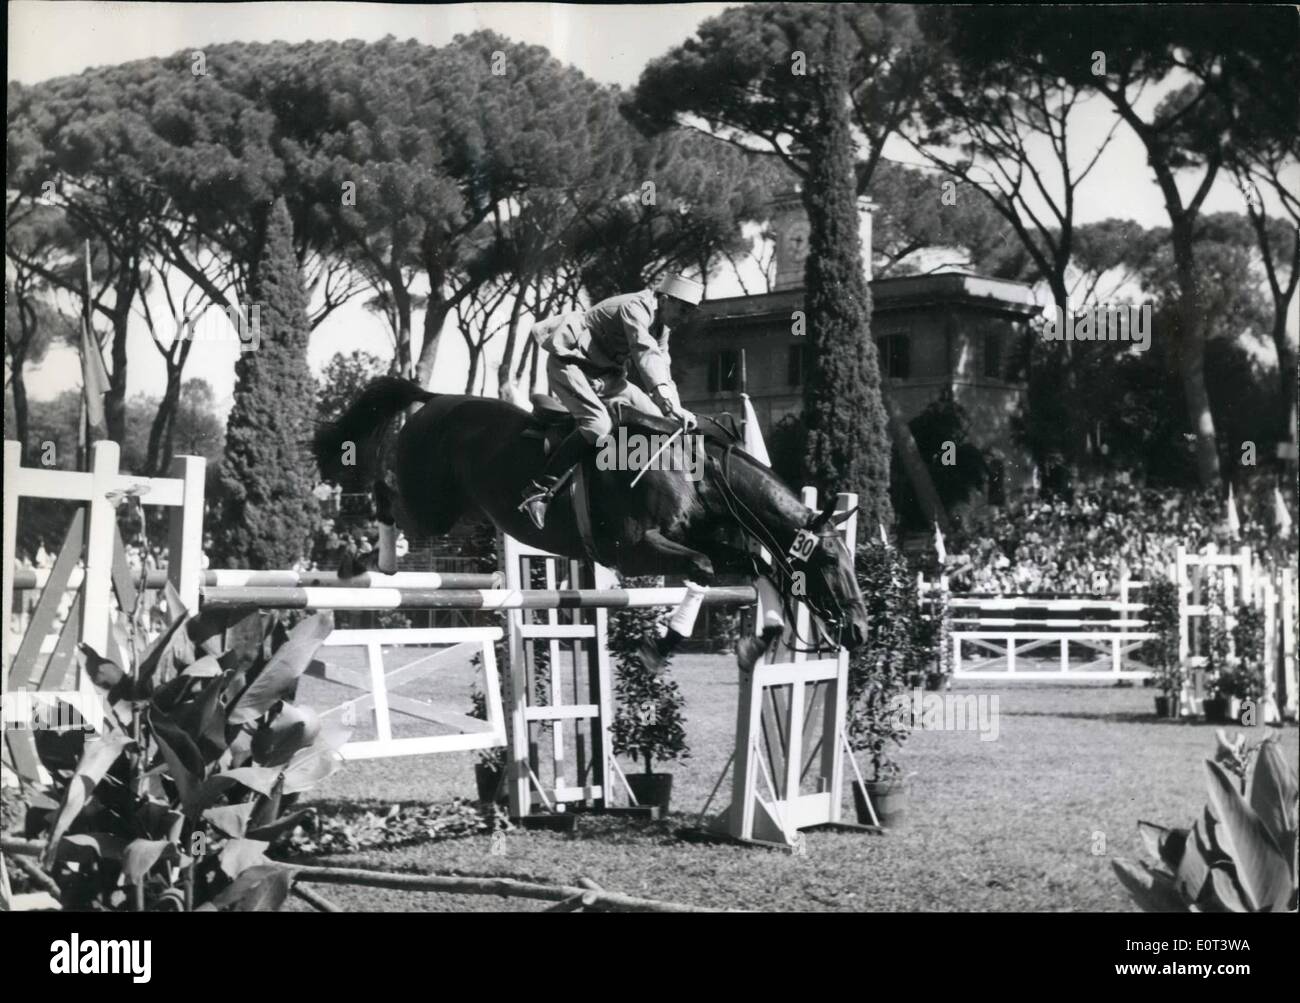 Septembre 09, 1960 - Jeux Olympiques : des évènements équestres à Piazza Di Sienna photo montre le premier rider ept. Bernard De fromeelles pendant le Grand Prix de saut d'obstacles à Piazza Di Sianna ce matin. Banque D'Images